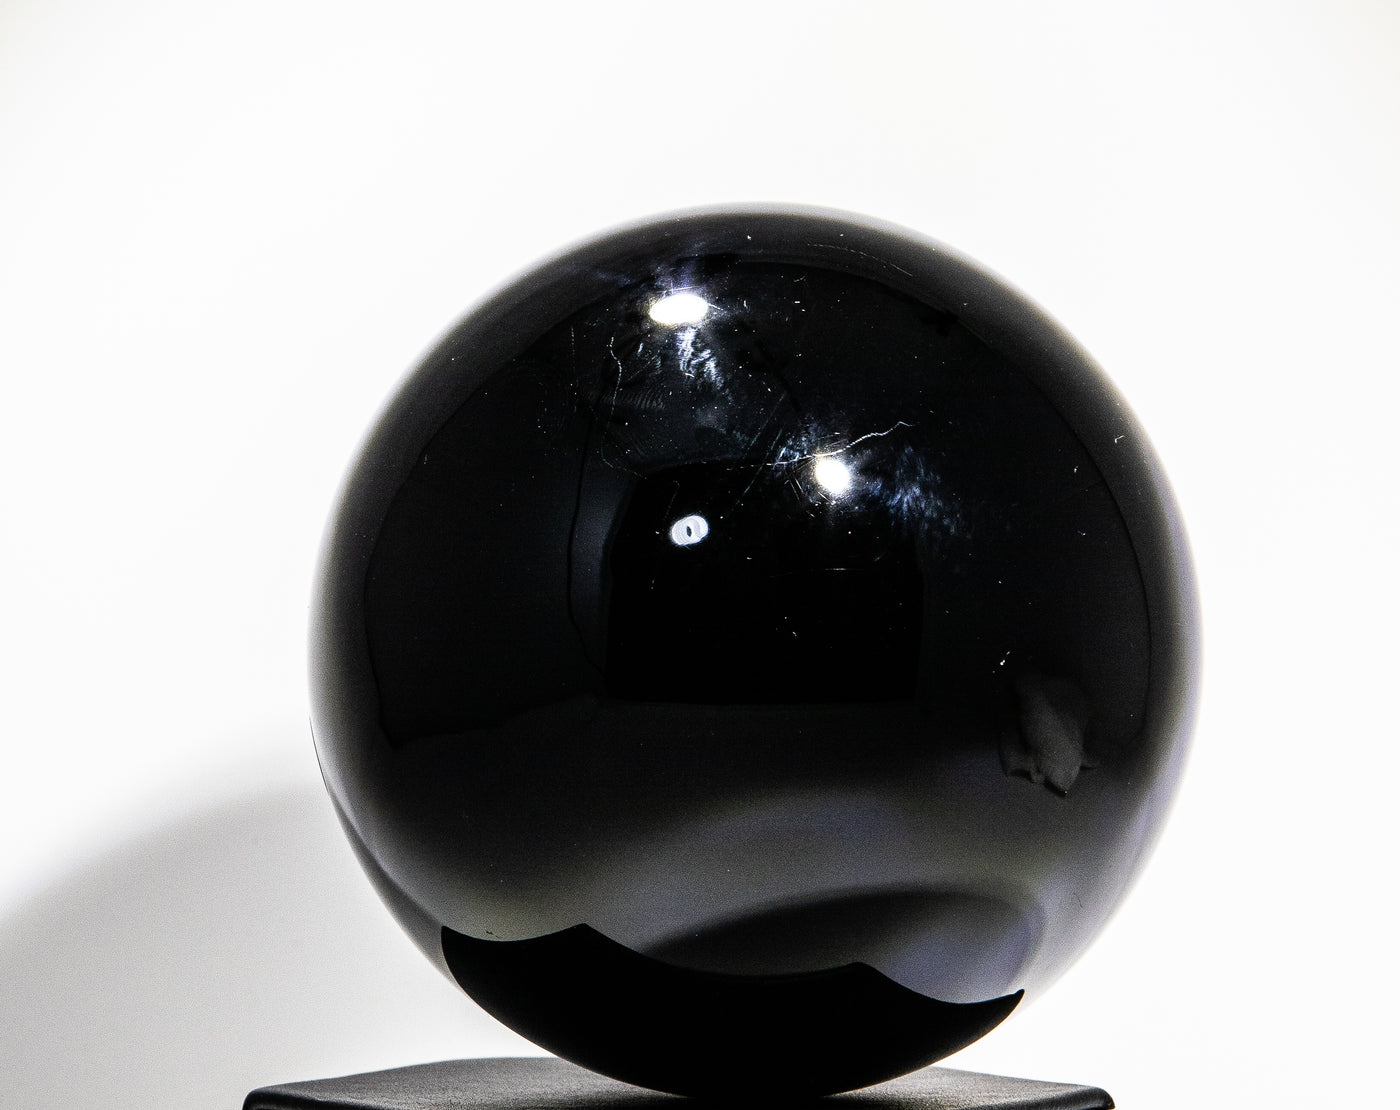 194 Obsidian Sphere 3 lb 4x13in